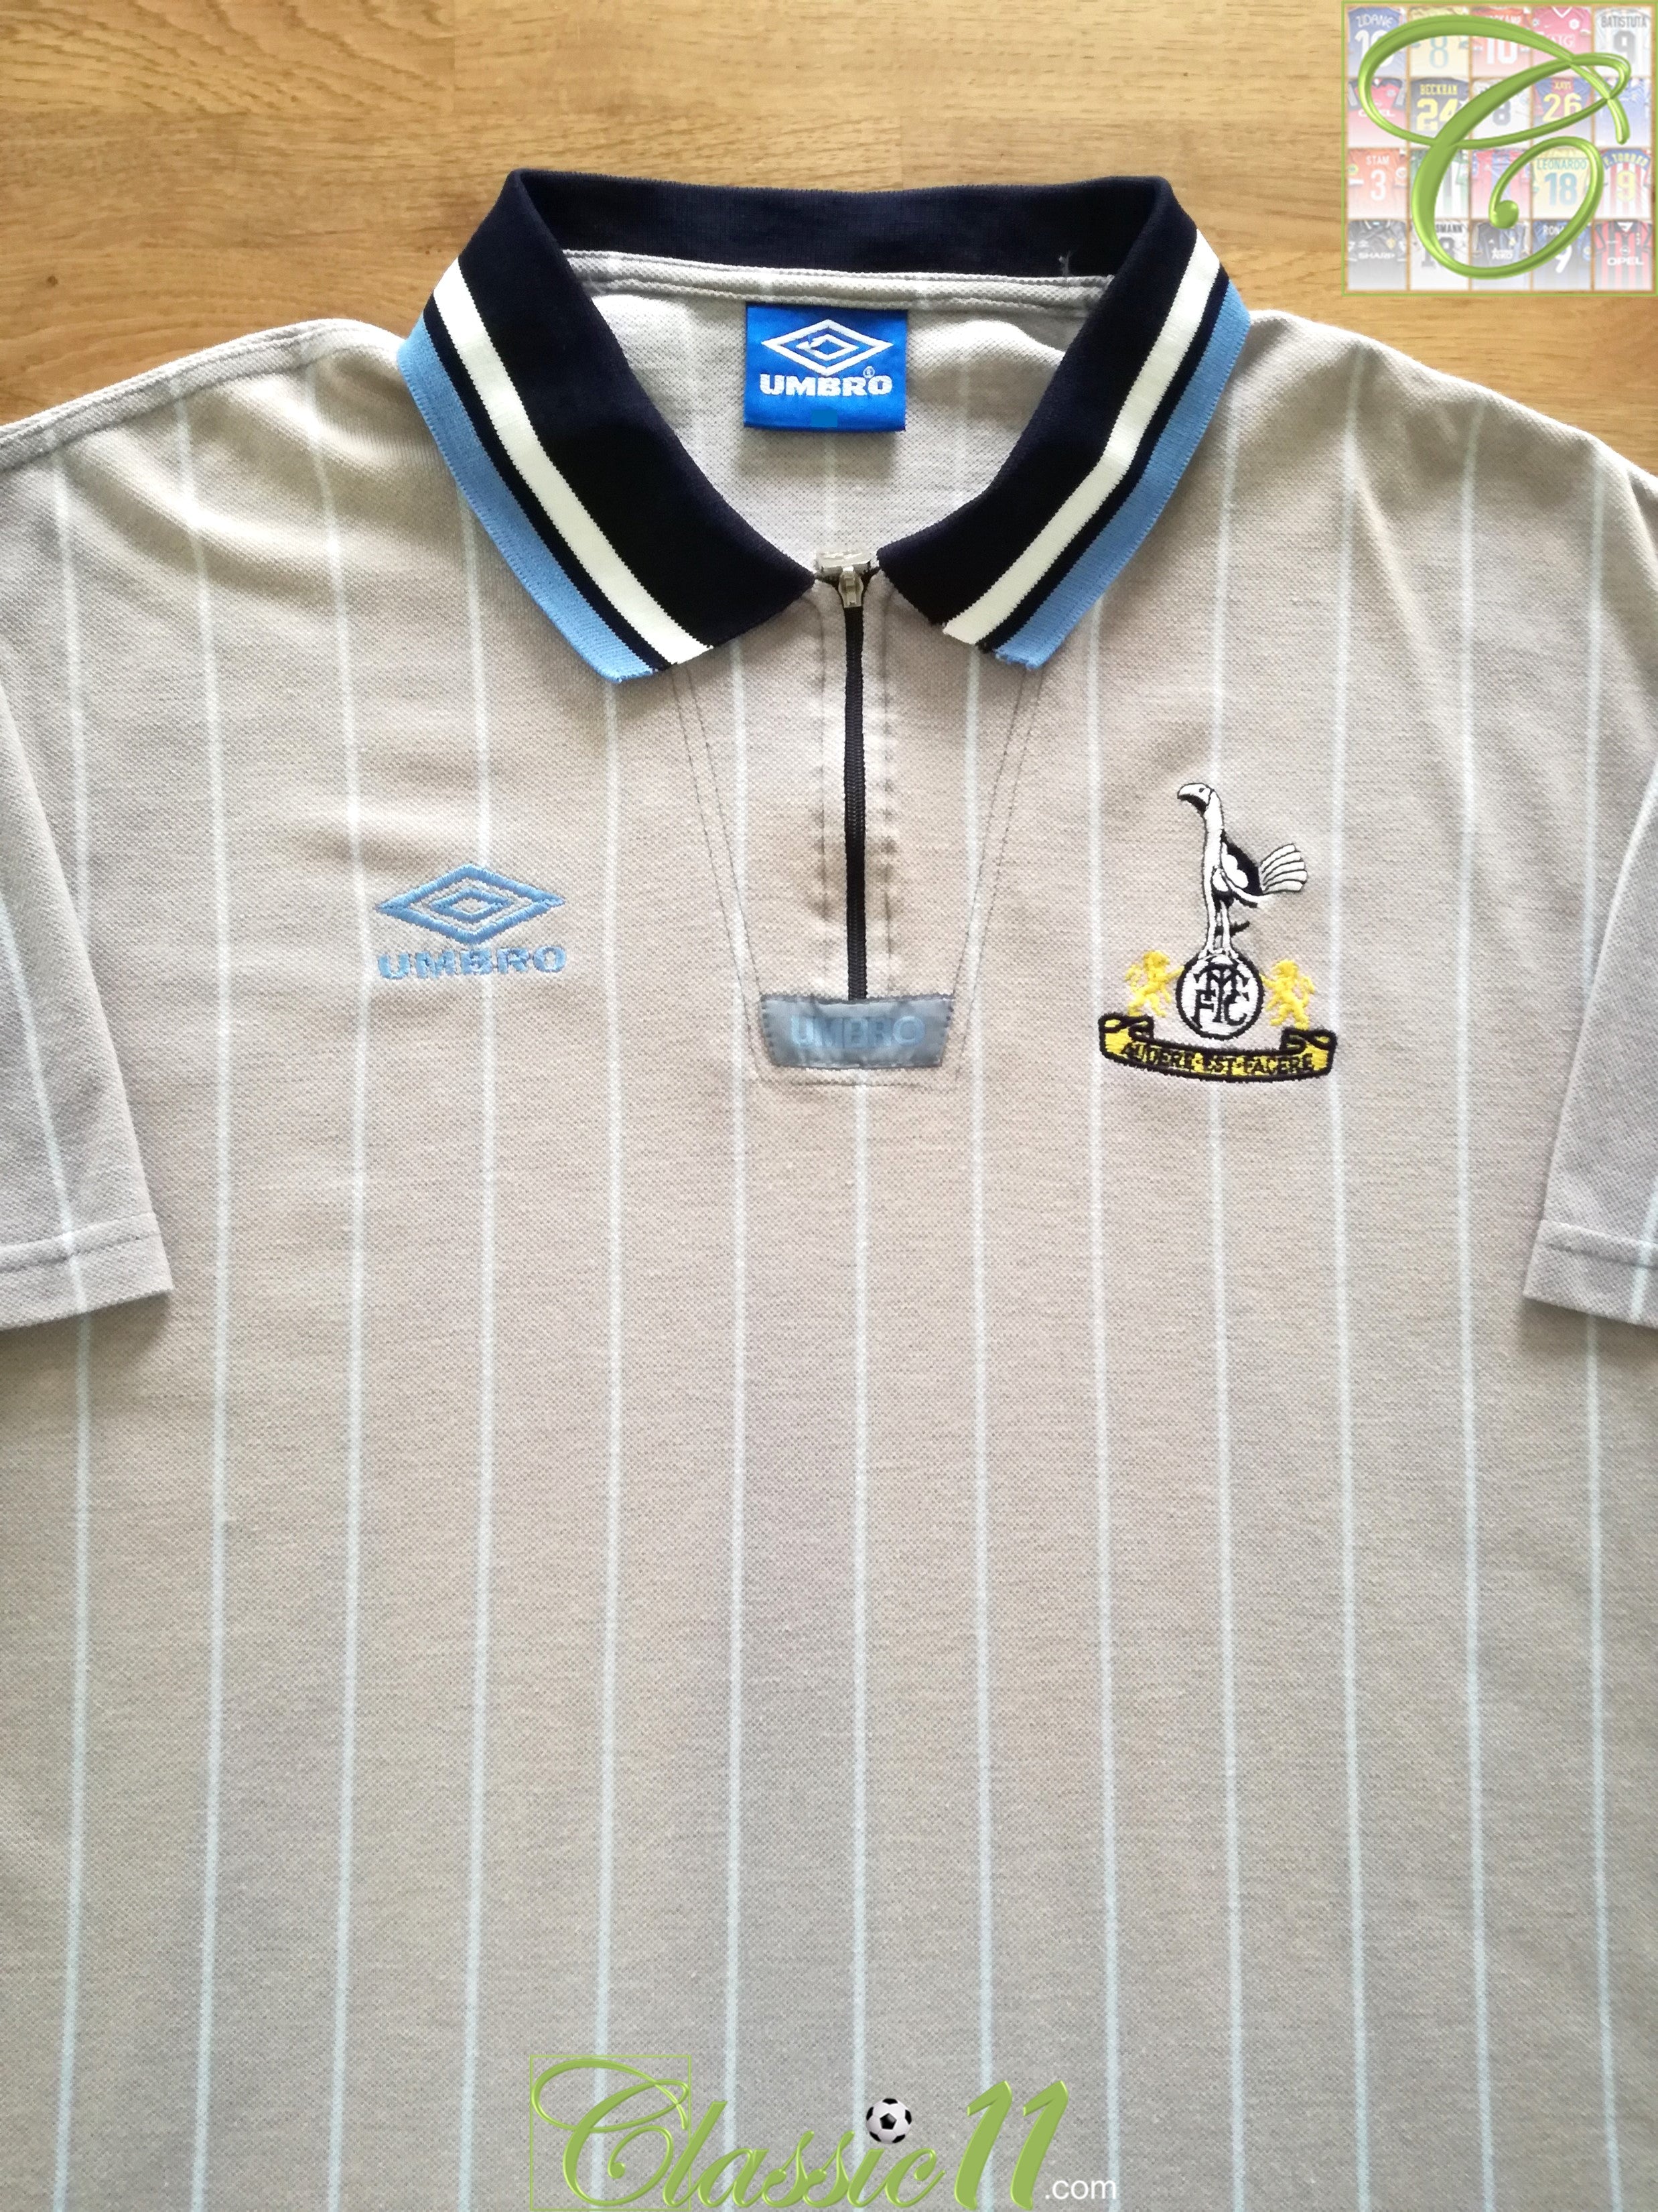 Tottenham Hotspur 1993 1994 Home Football Shirt Soccer Jersey Umbro Mens  size XL